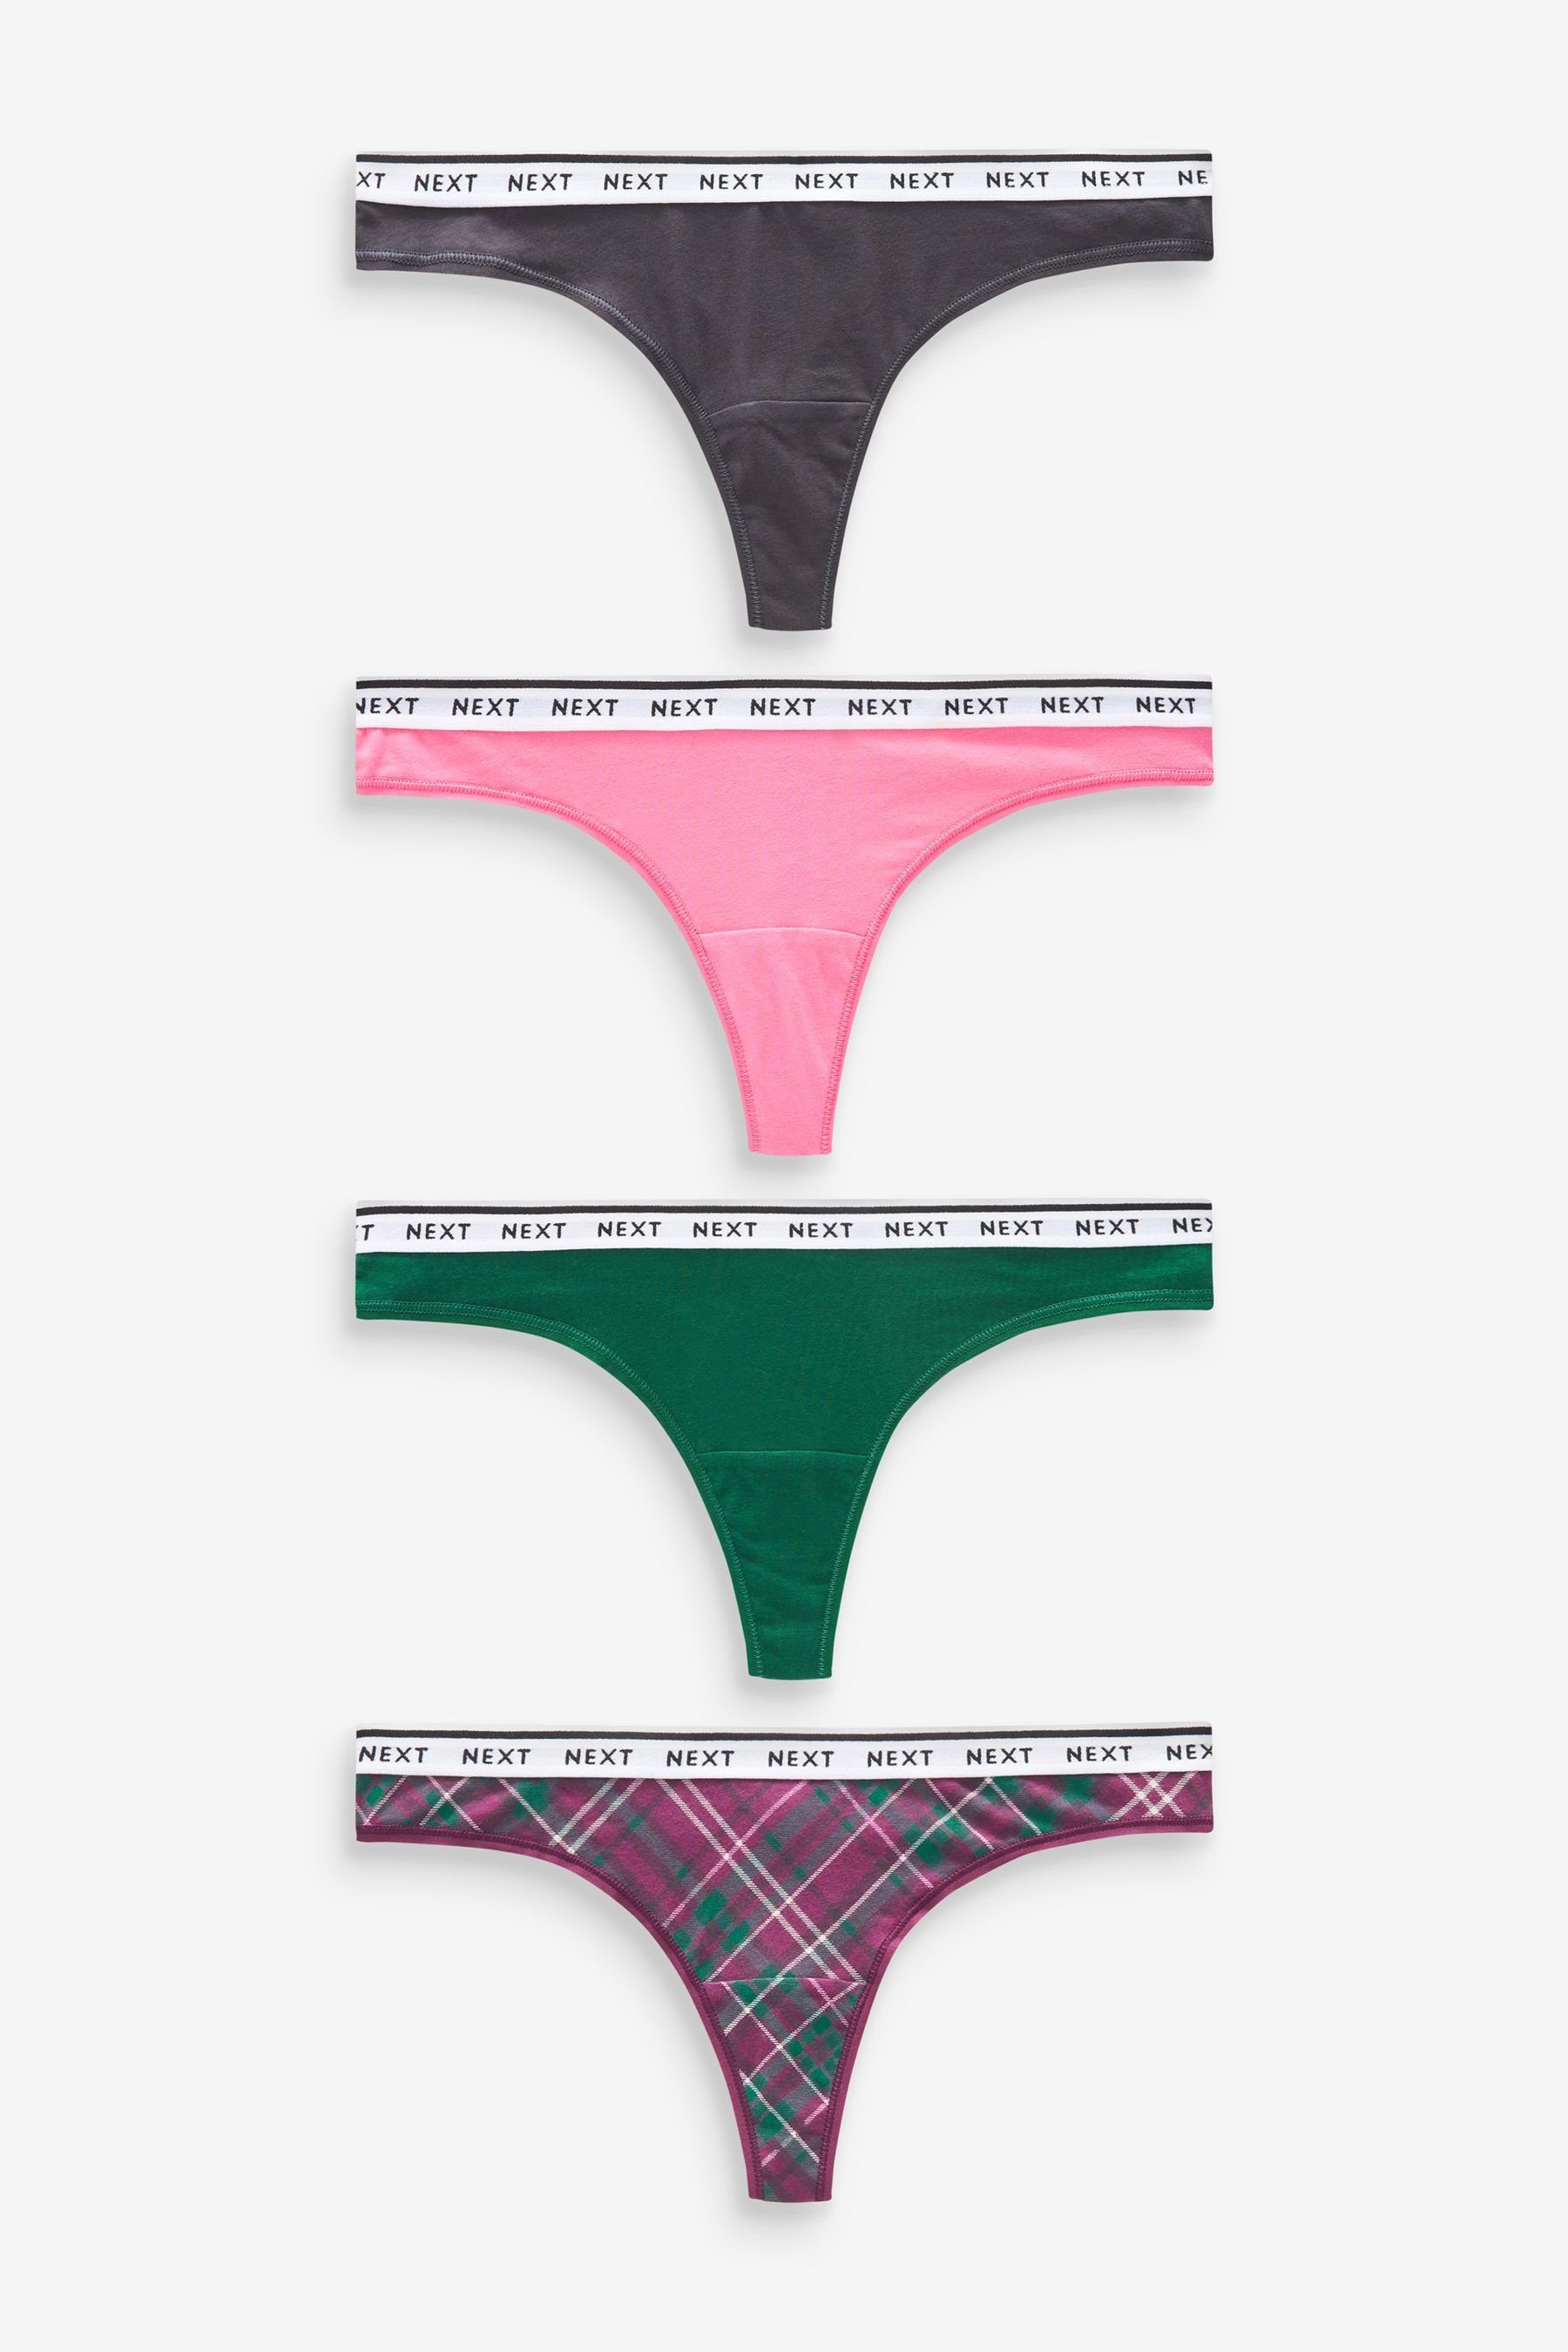 Next Slip Baumwollslips mit Logo, 4er-Pack (4-St) Pink/Purple Check